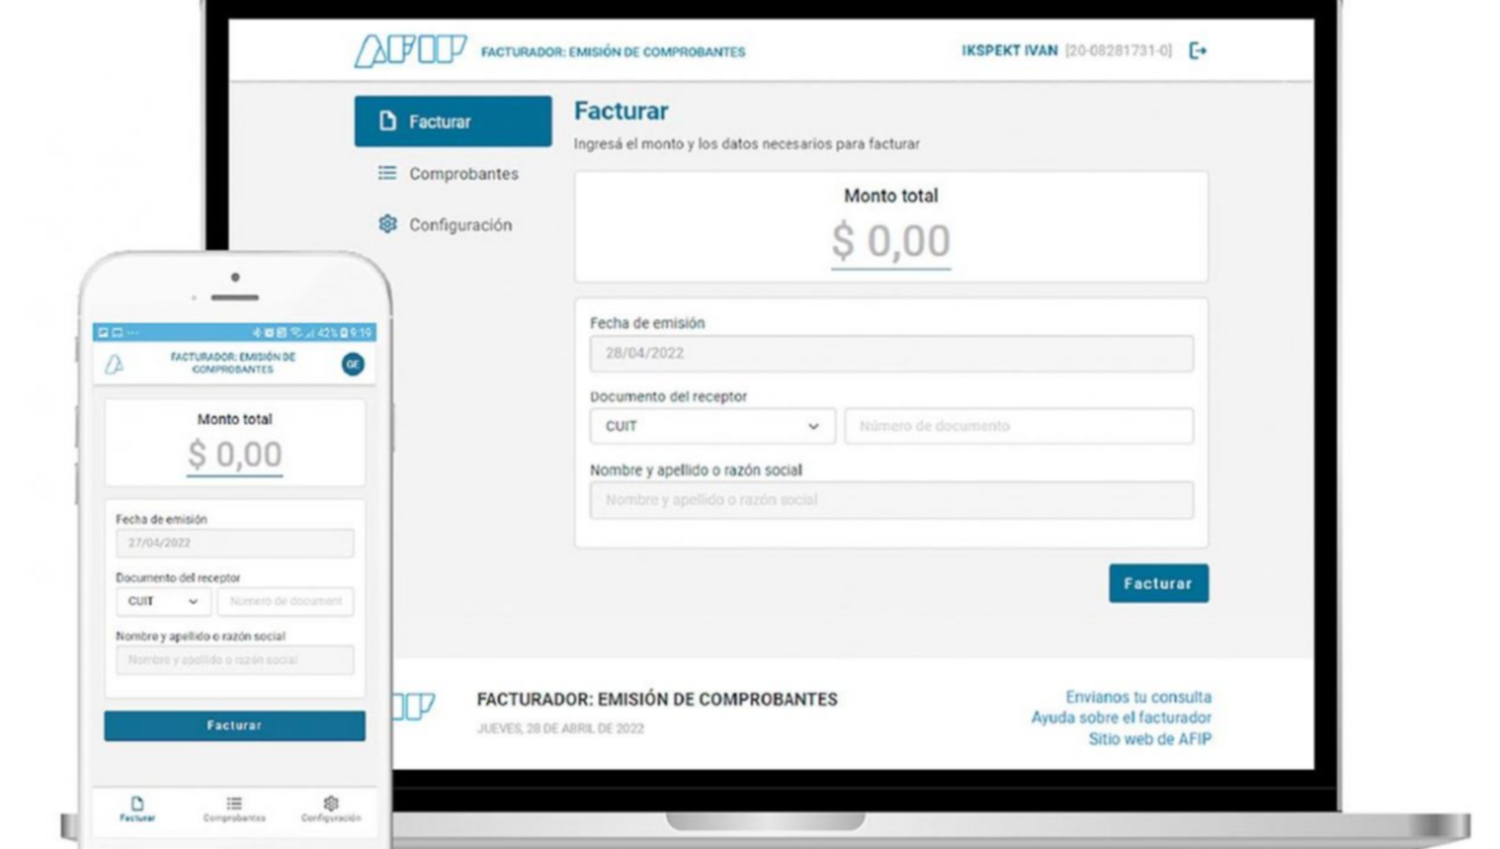 AFIP lanzó nuevo facturador móvil: para generar un comprobante en cuatro clicks ahorrando tiempo y dinero